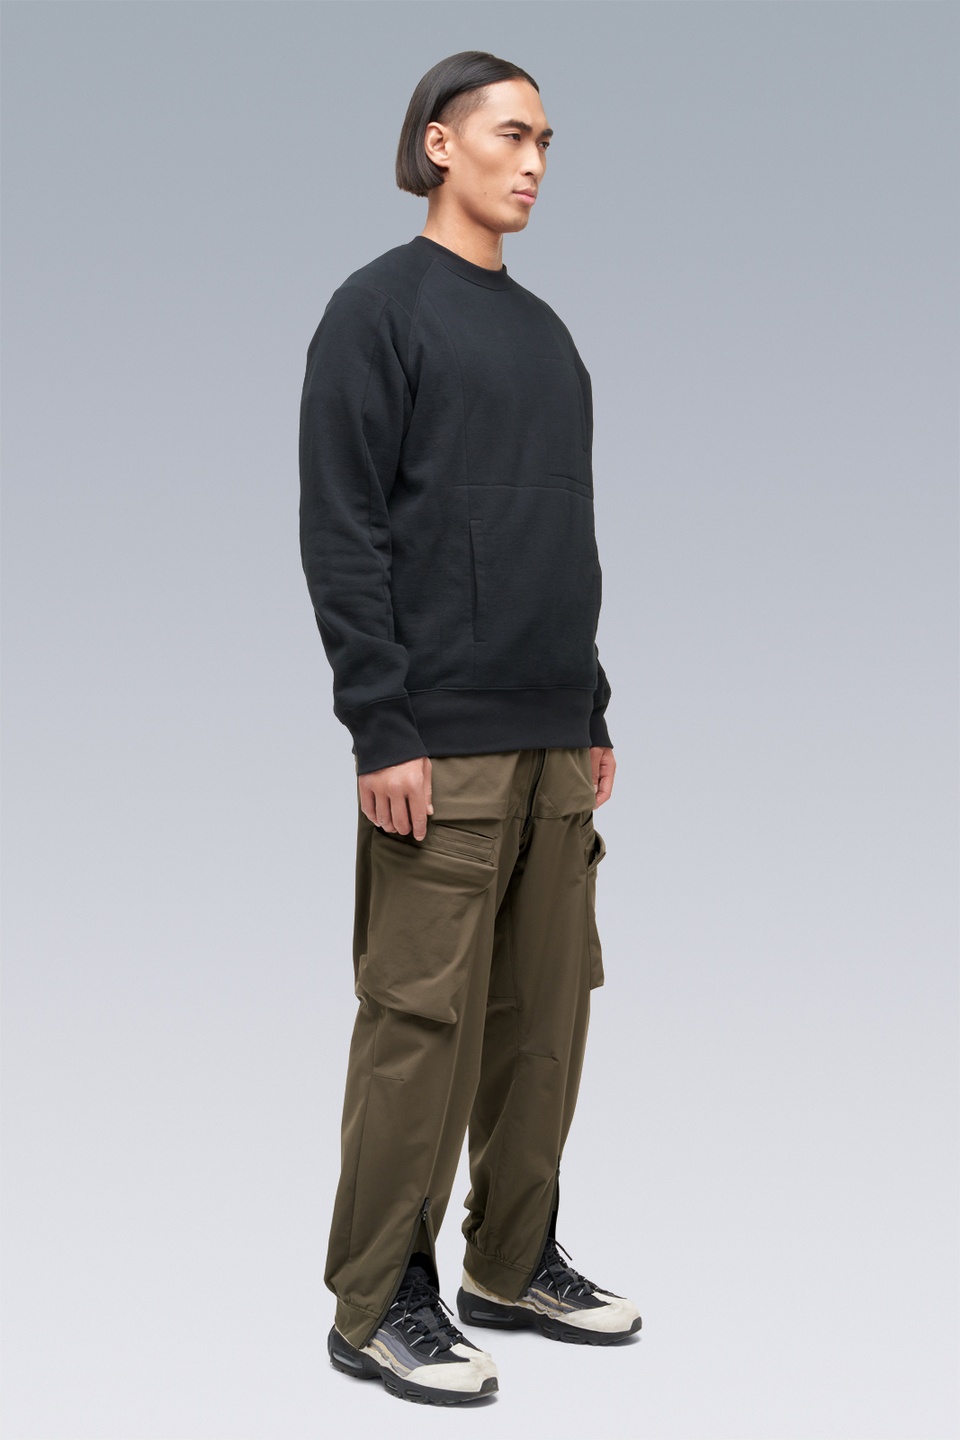 S14-BR Cotton Crewneck Sweatshirt Black - 2